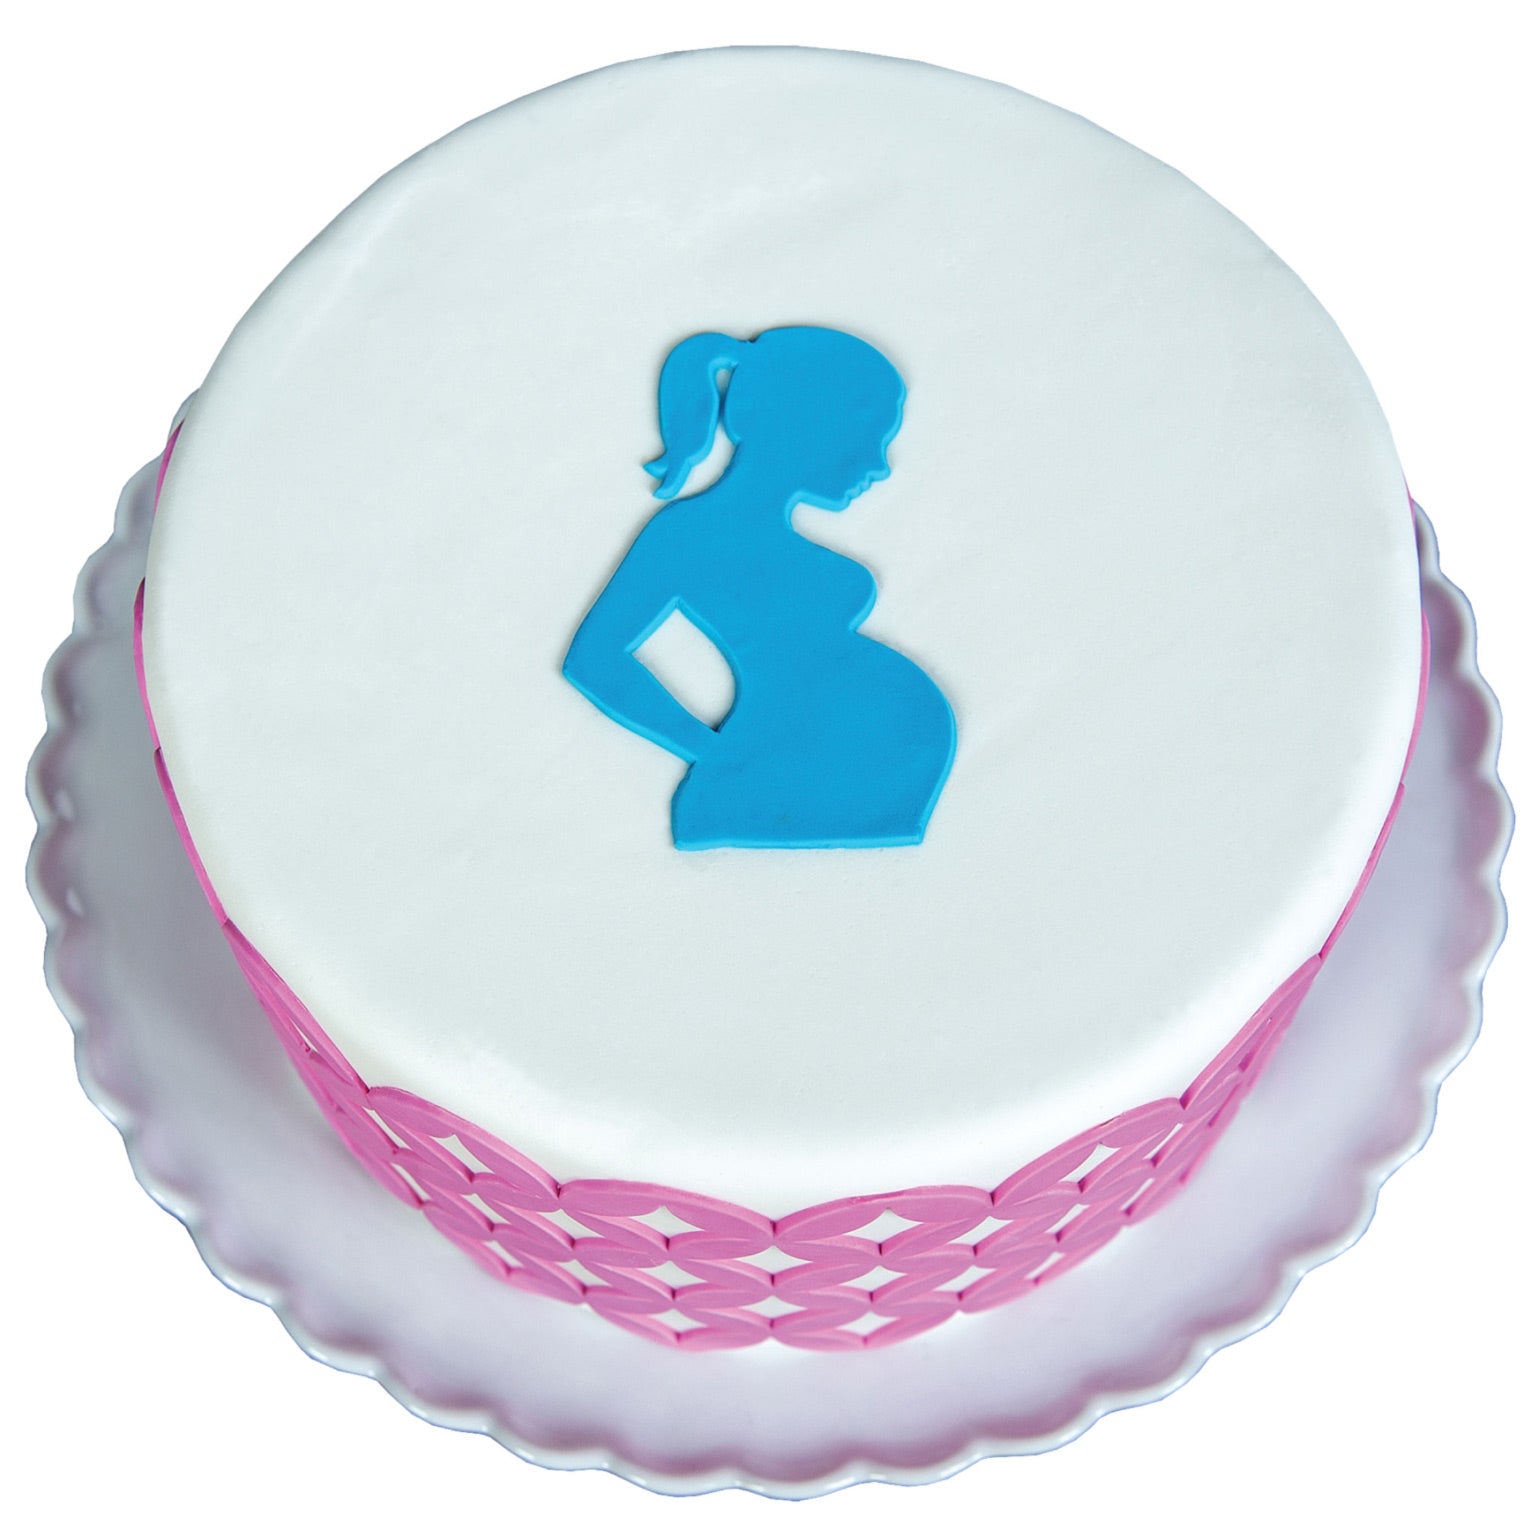 Pregnant woman theme cake - YouTube